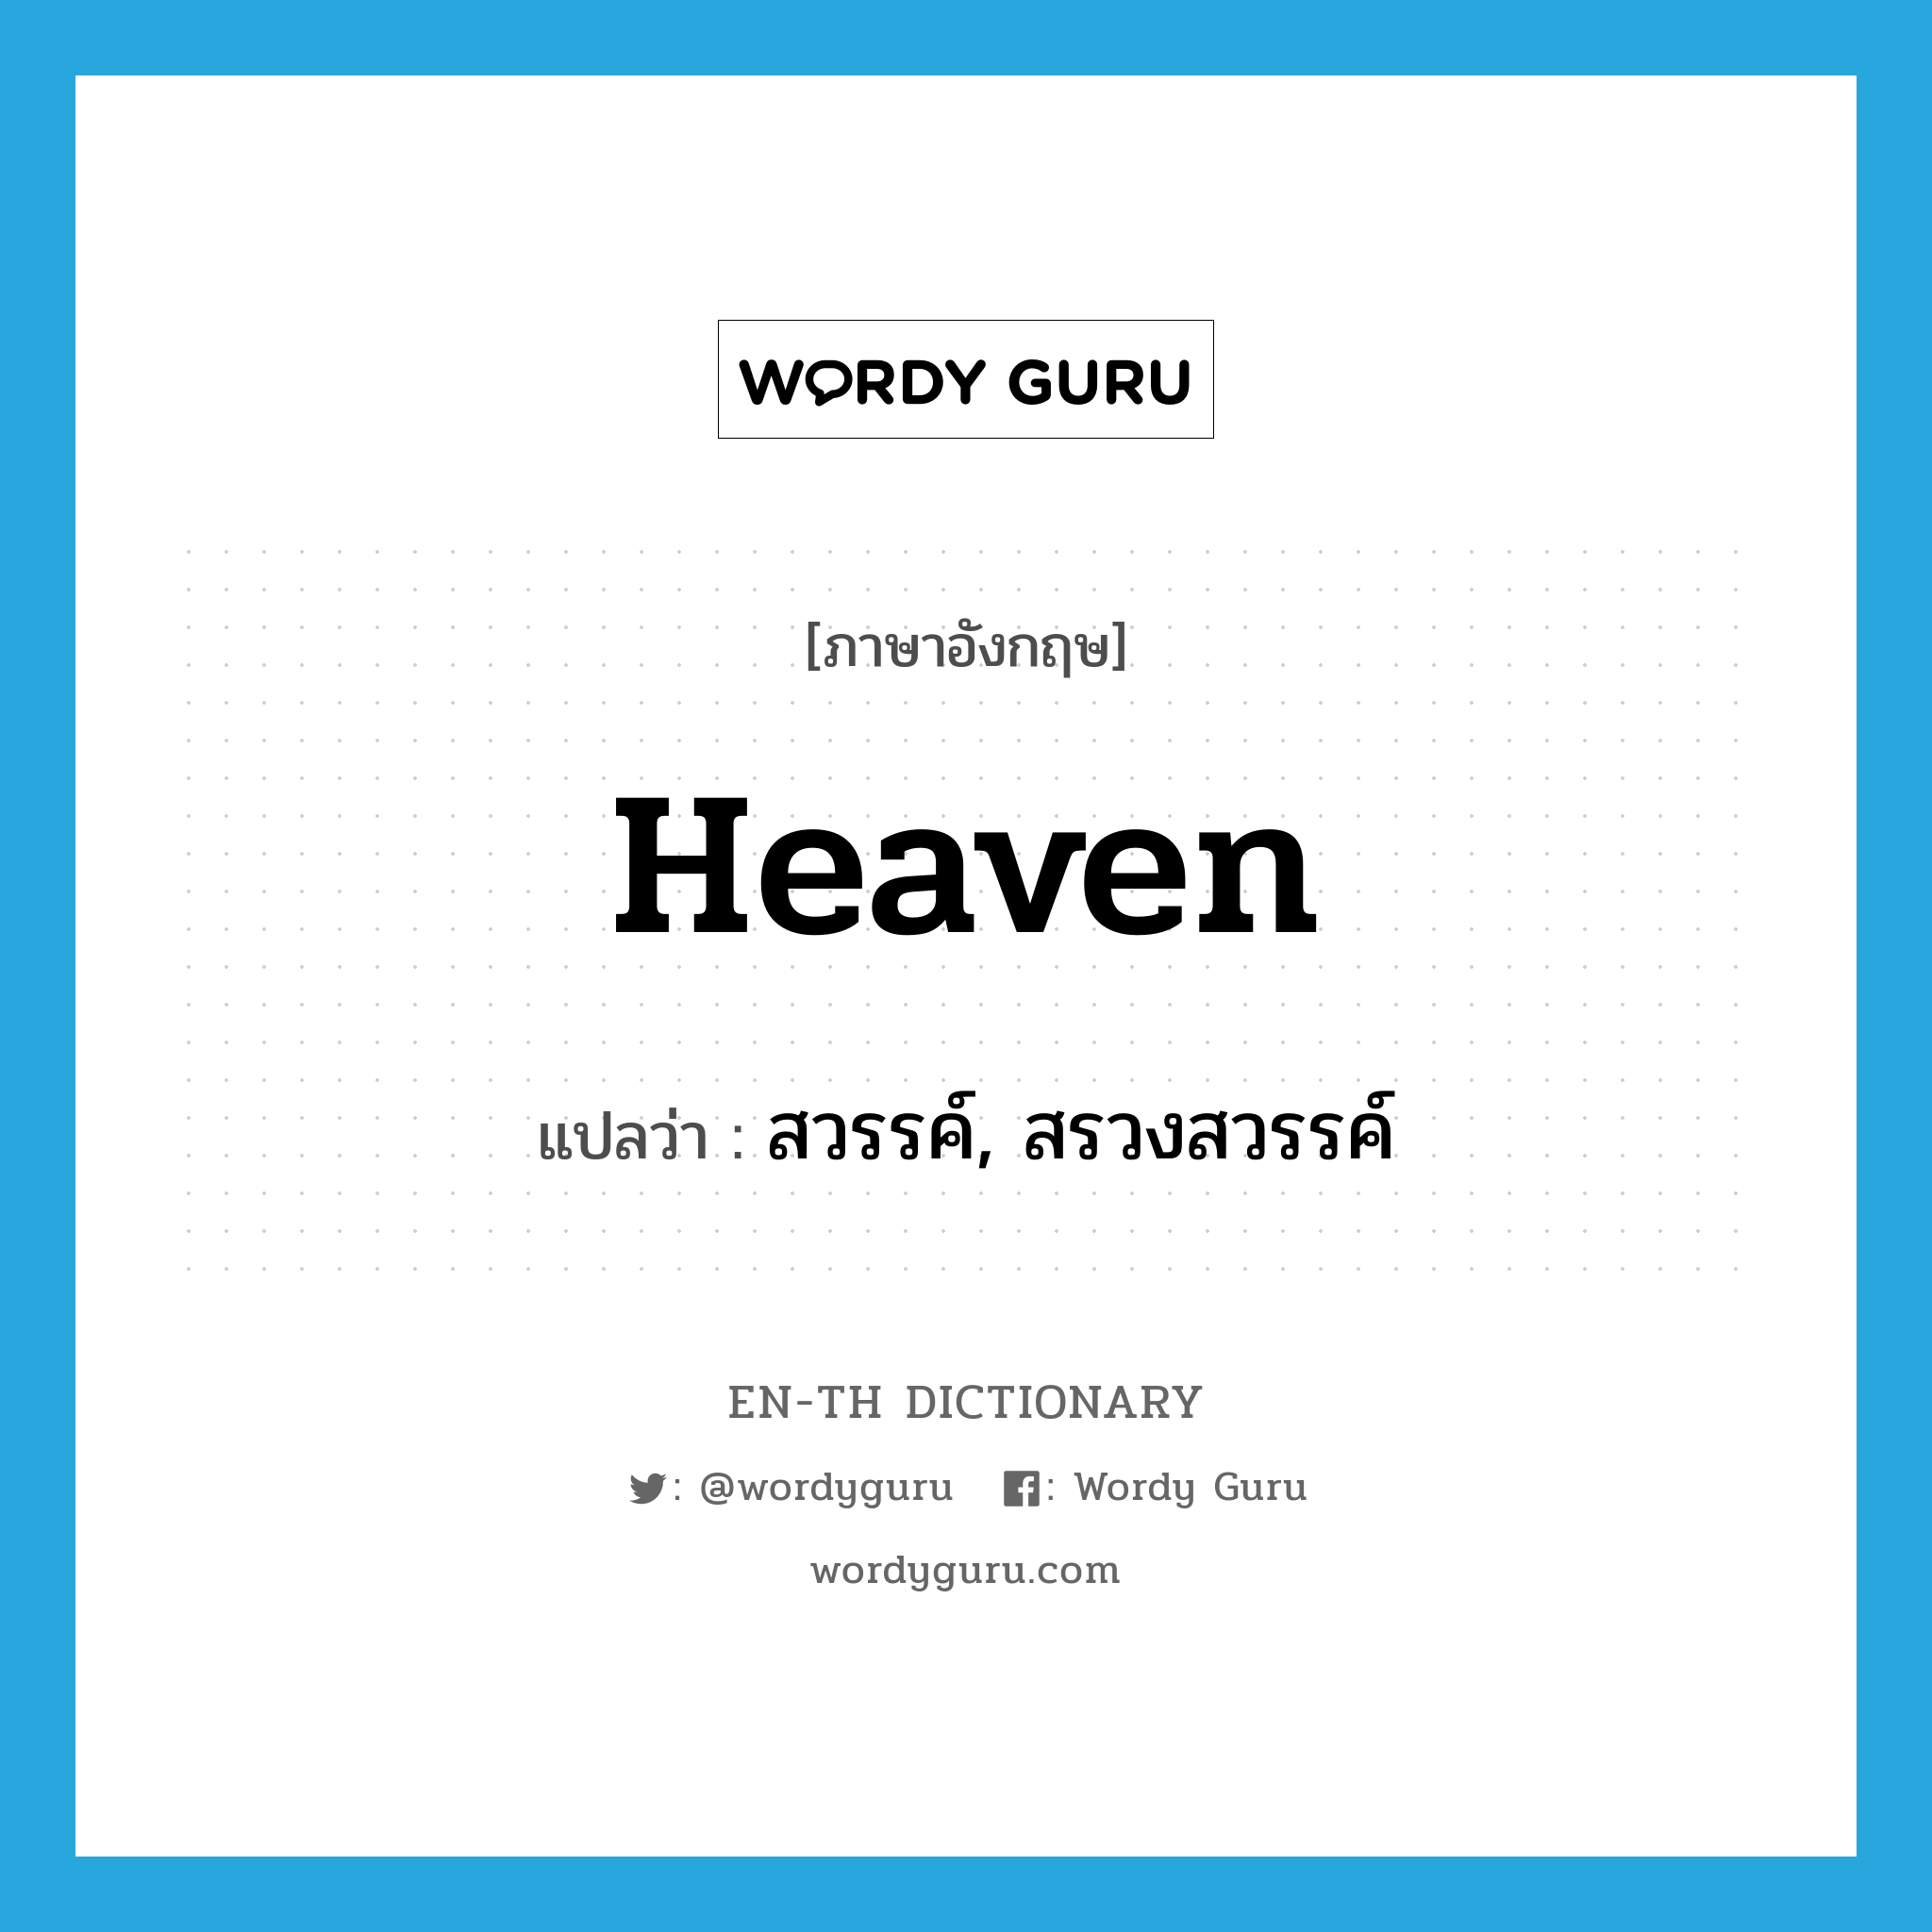 สวรรค์, สรวงสวรรค์ ภาษาอังกฤษ?, คำศัพท์ภาษาอังกฤษ สวรรค์, สรวงสวรรค์ แปลว่า heaven ประเภท N หมวด N